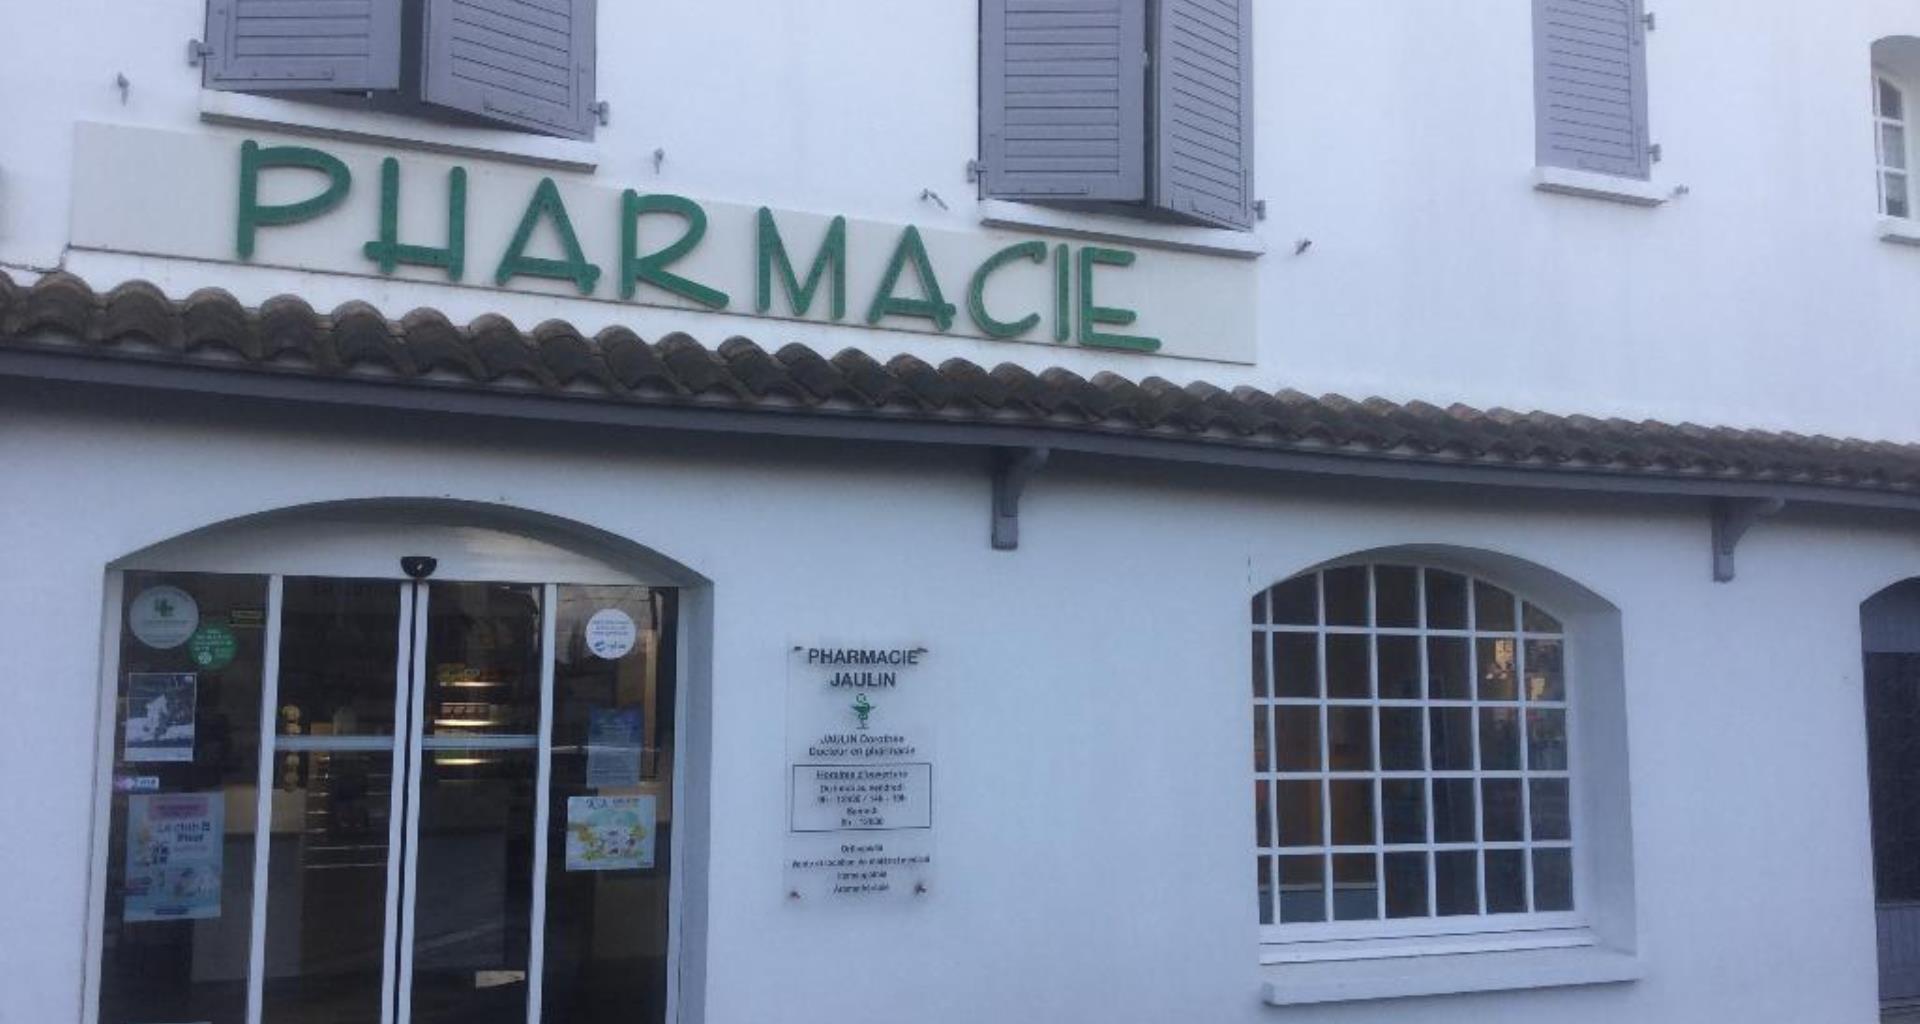 Pharmacie_jaulin,l'Île d'Elle, facade